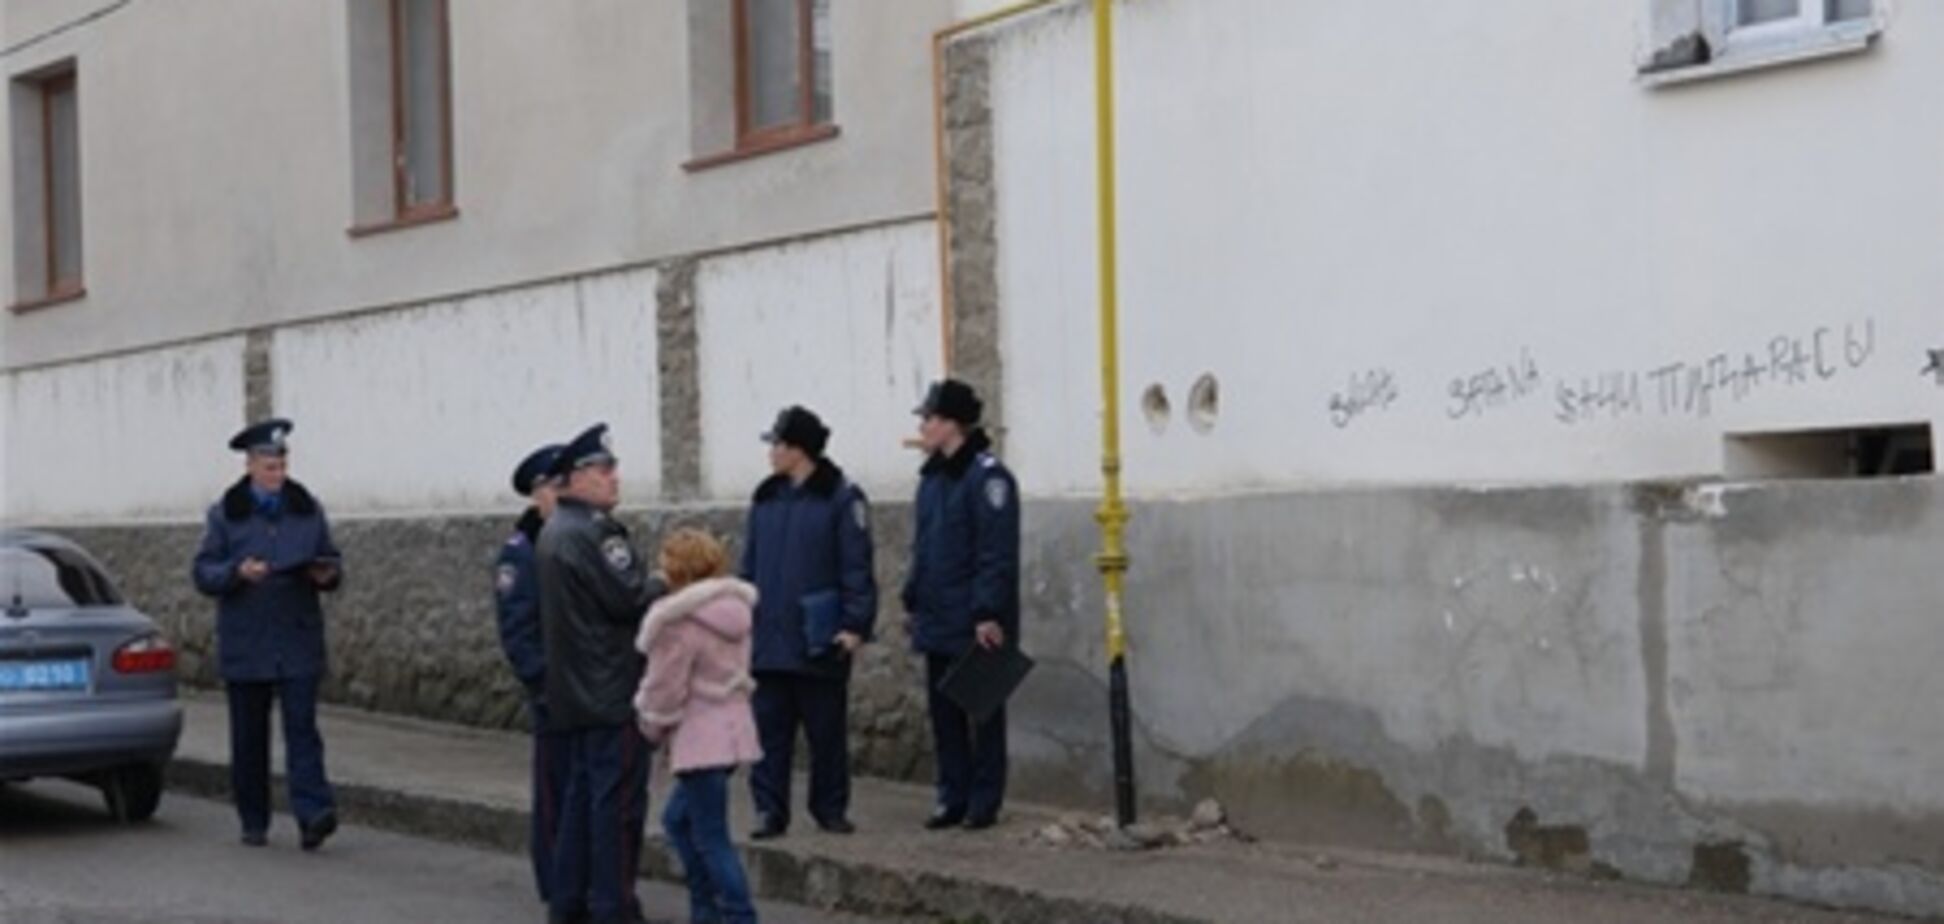 Главное здание мусульман Крыма изрисовали свастикой. Фото. Видео